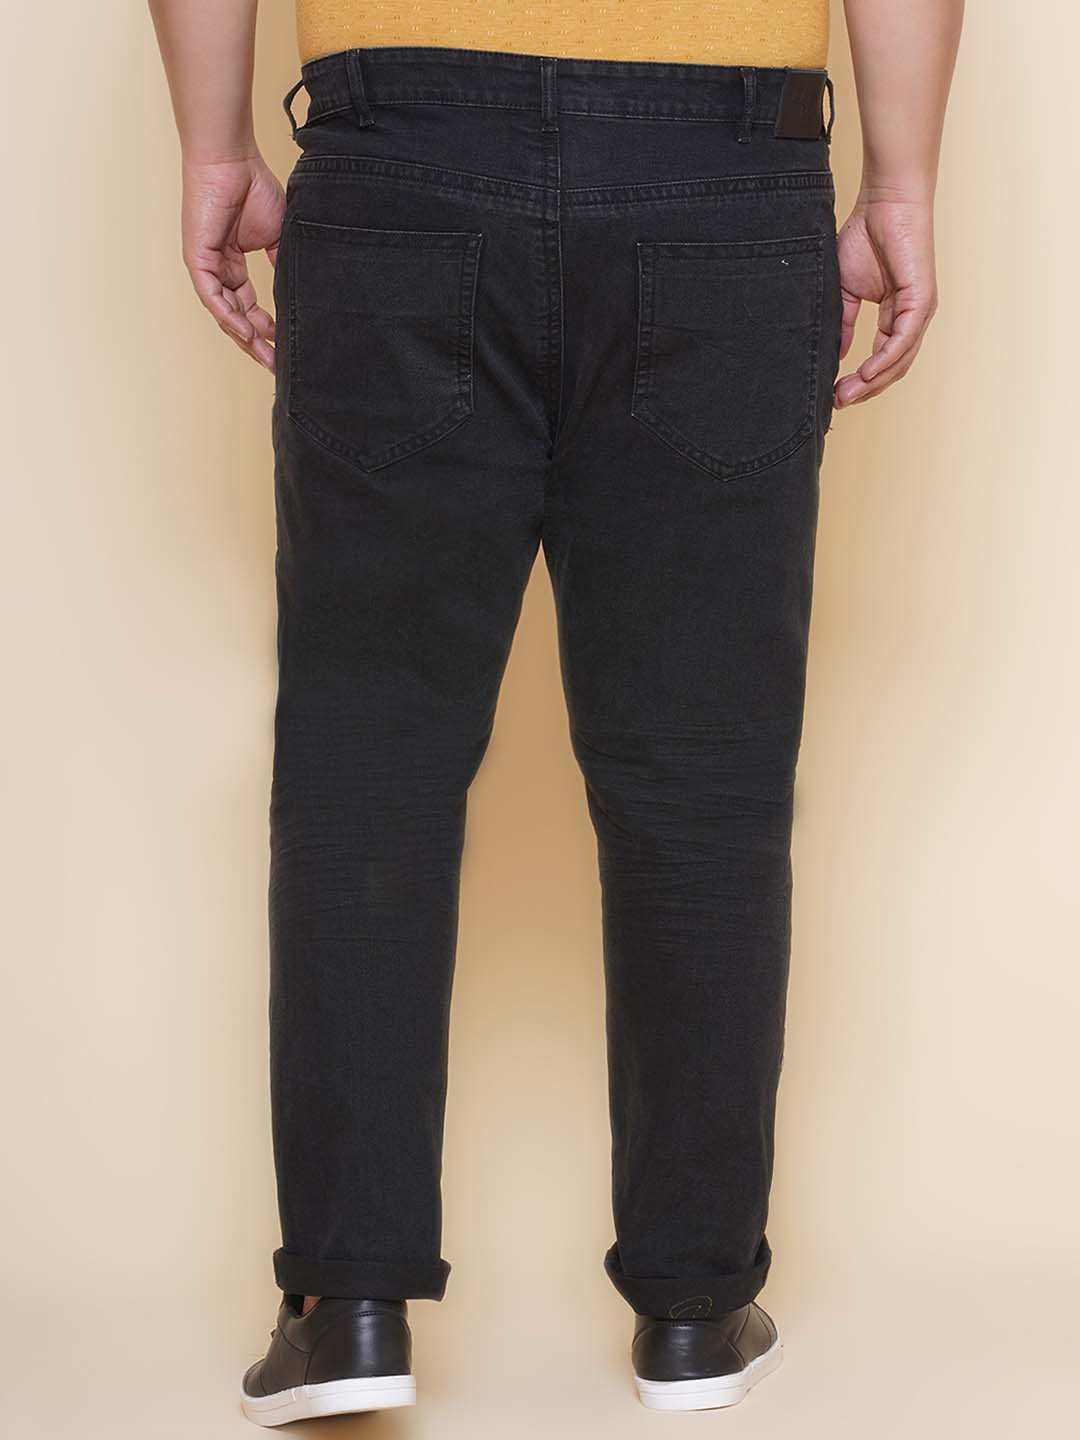 bottomwear/jeans/JPJ27104/jpj27104-5.jpg